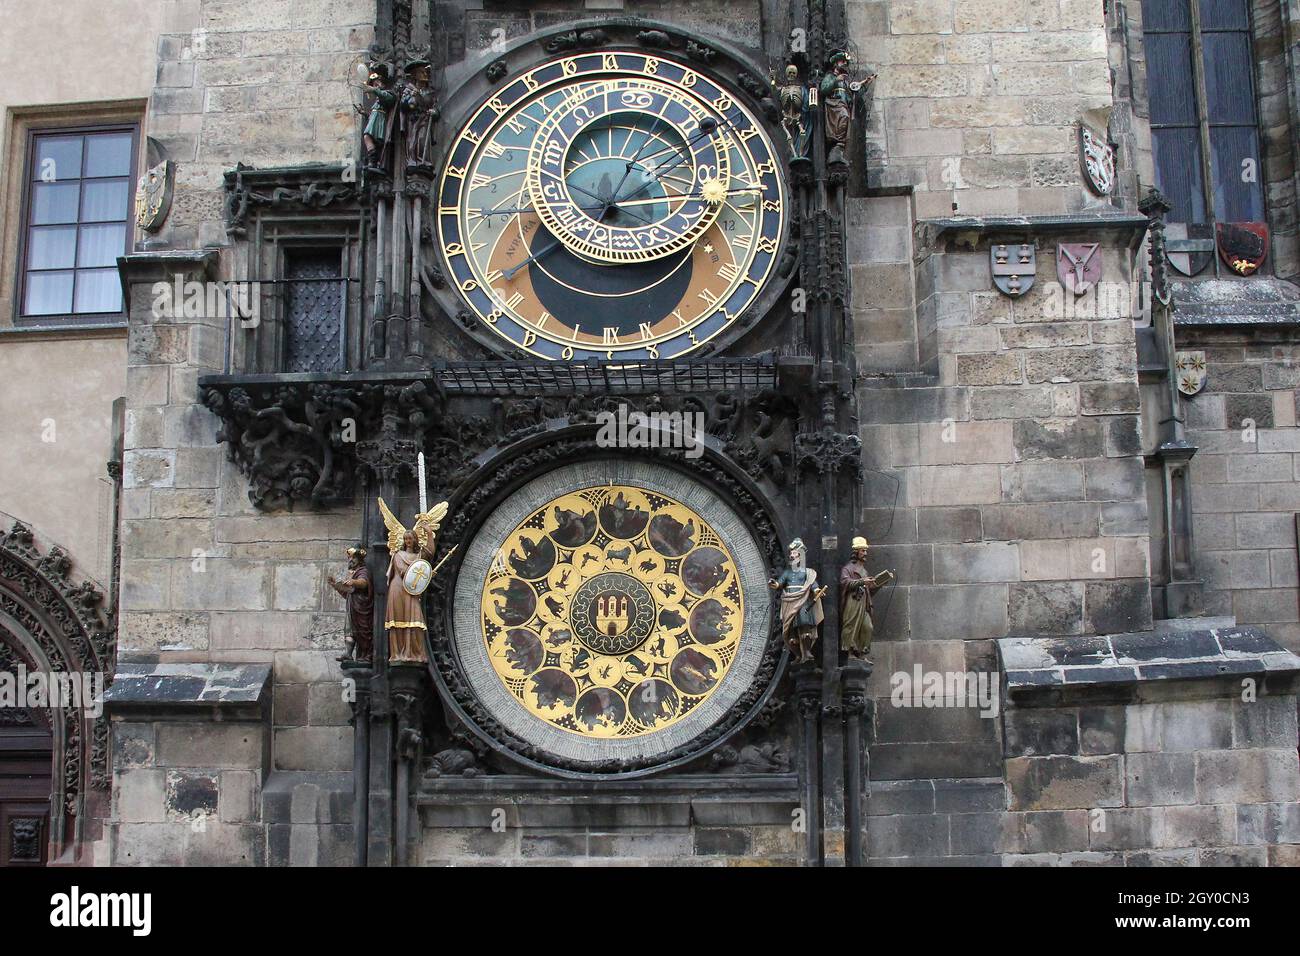 PRAG, TSCHECHIEN - 23. APRIL 2012: Die Prager Astronomische Uhr ist eine mittelalterliche Turmuhr, die an der Südwand des Alten Rathausturms auf dem montiert ist Stockfoto